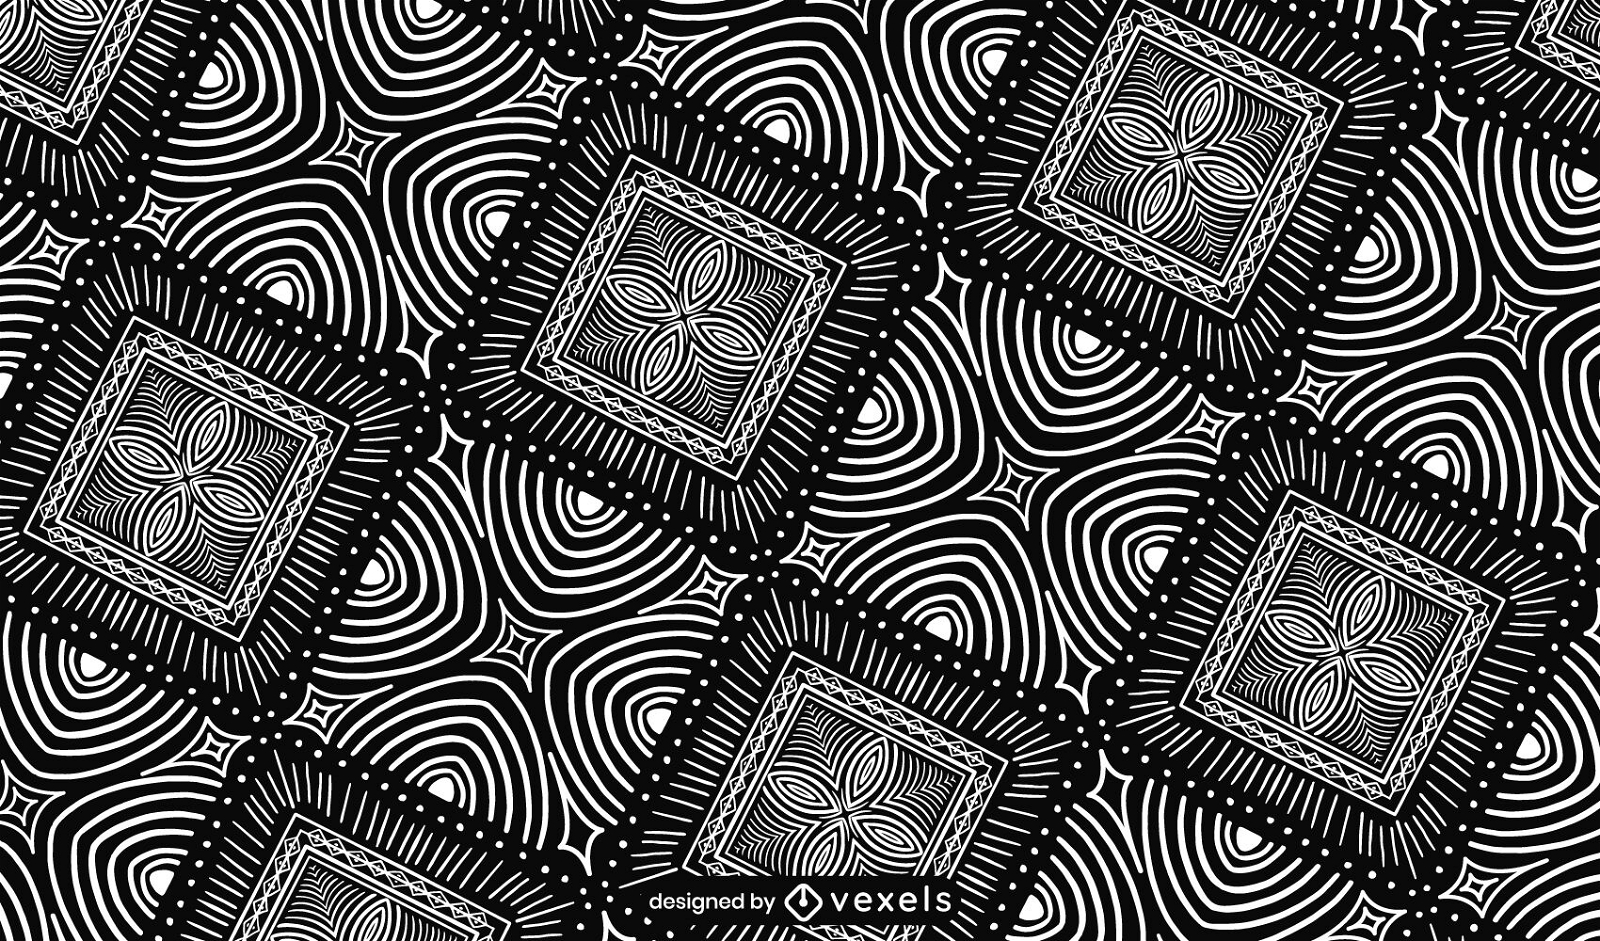 Diseño de patrón de ilusión óptica en blanco y negro.